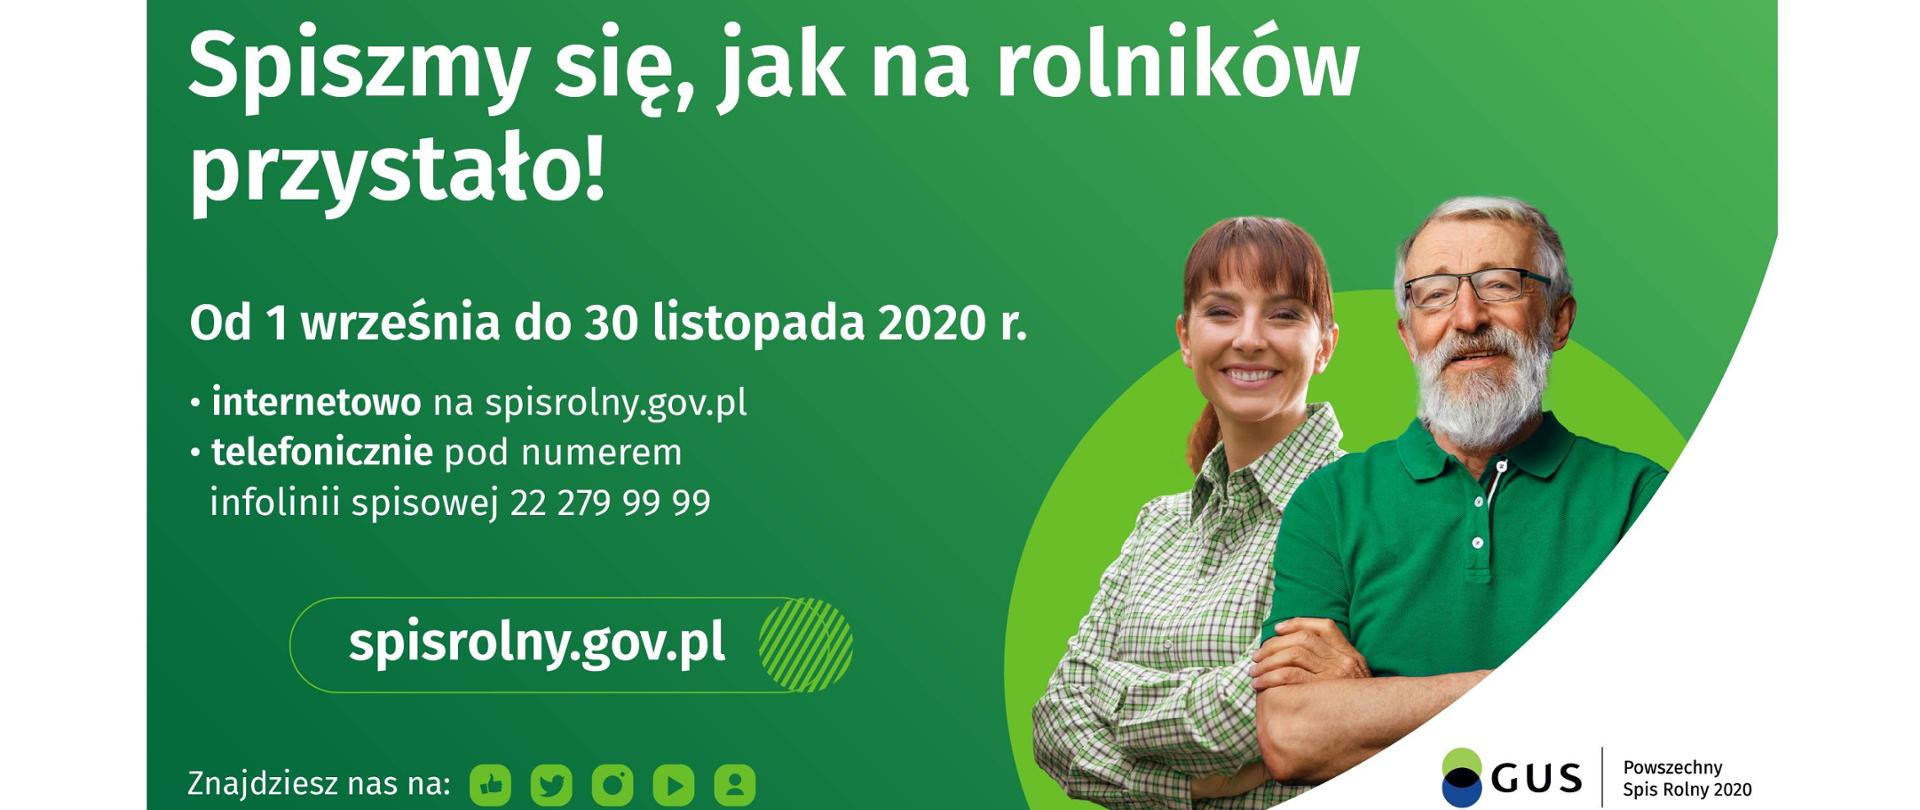 Baner powszechnego spisu rolnego - więcej informacji na stronie spisrolny.gov.pl